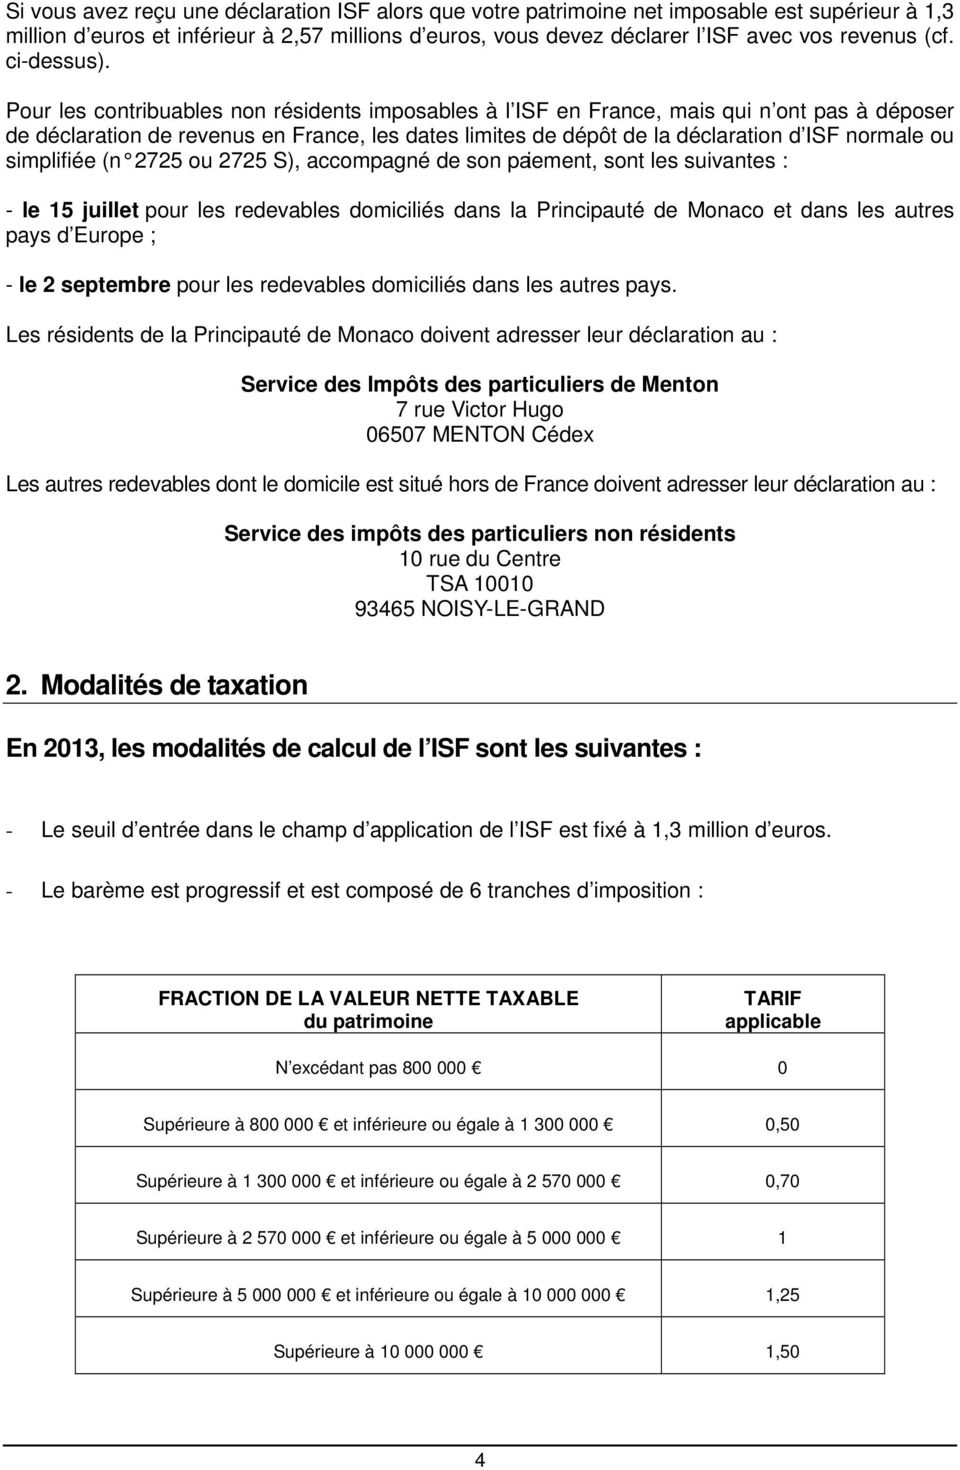 Pour les contribuables non résidents imposables à l ISF en France, mais qui n ont pas à déposer de déclaration de revenus en France, les dates limites de dépôt de la déclaration d ISF normale ou